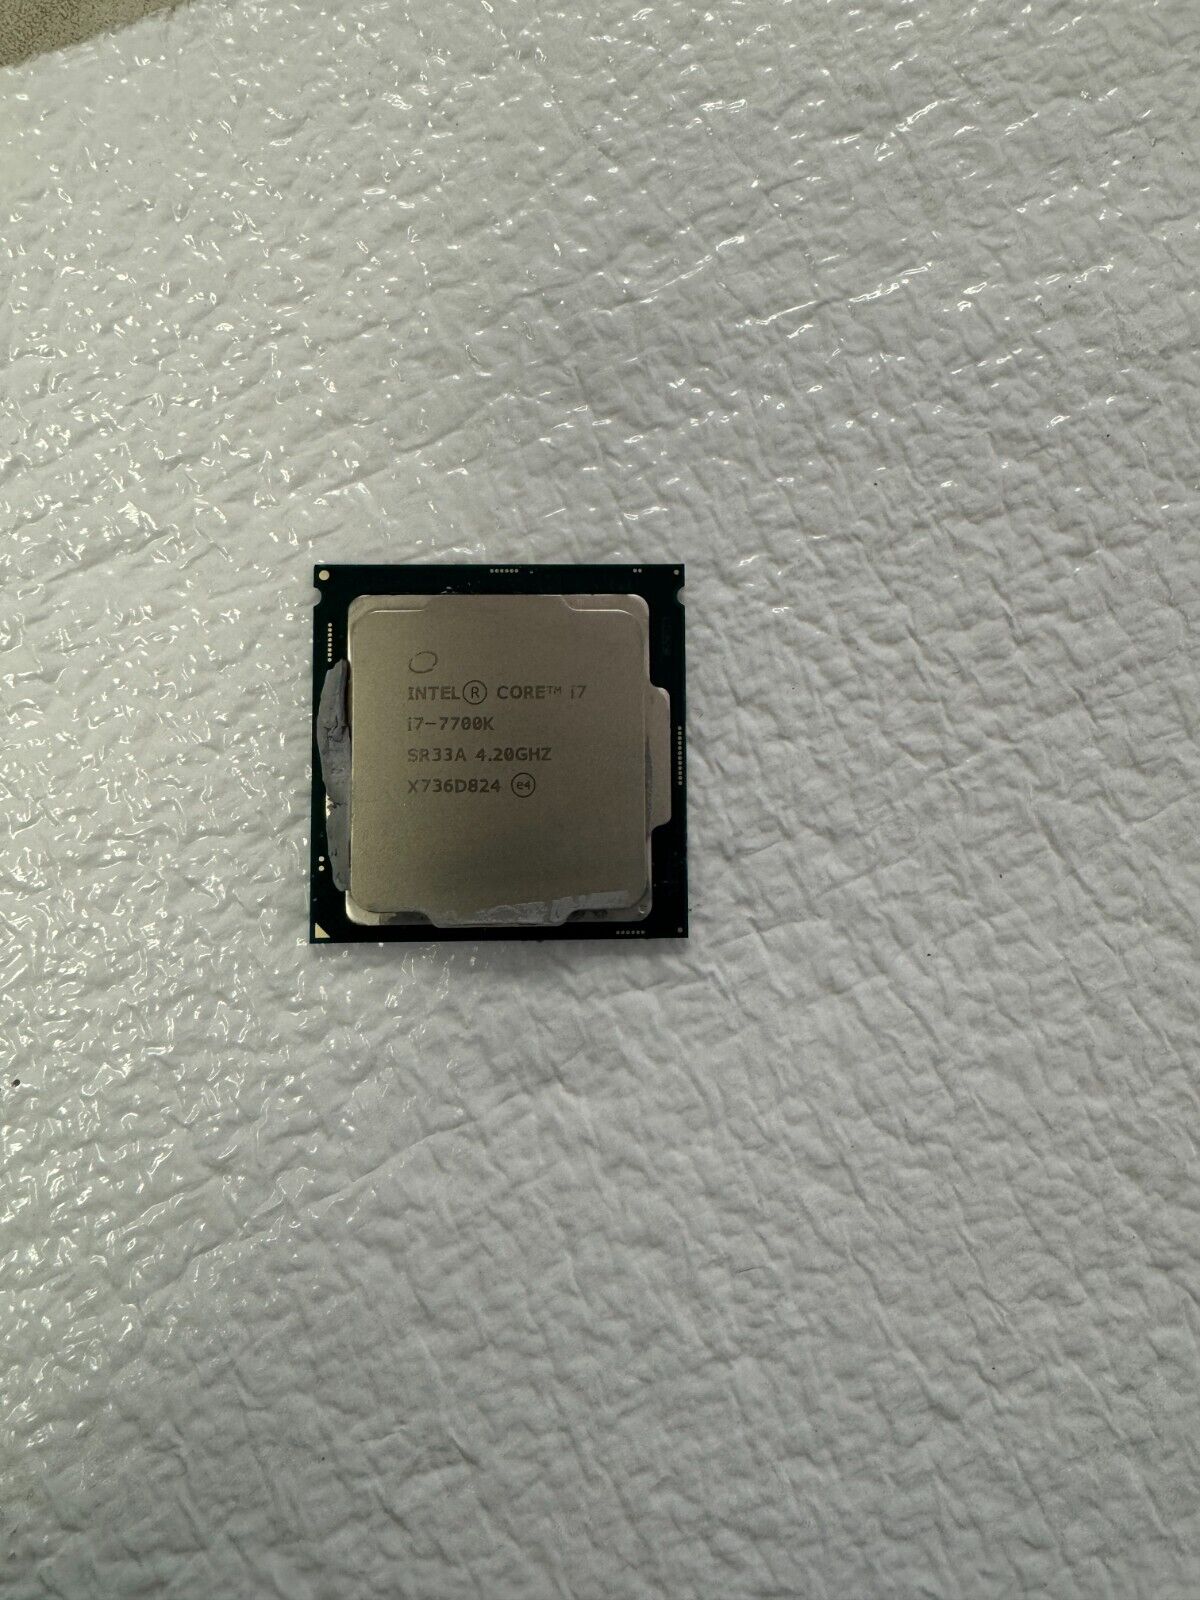 Intel Core i7-7700K 4.20GHz LGA1151 Quad-Core Desktop CPU Processor SR33A